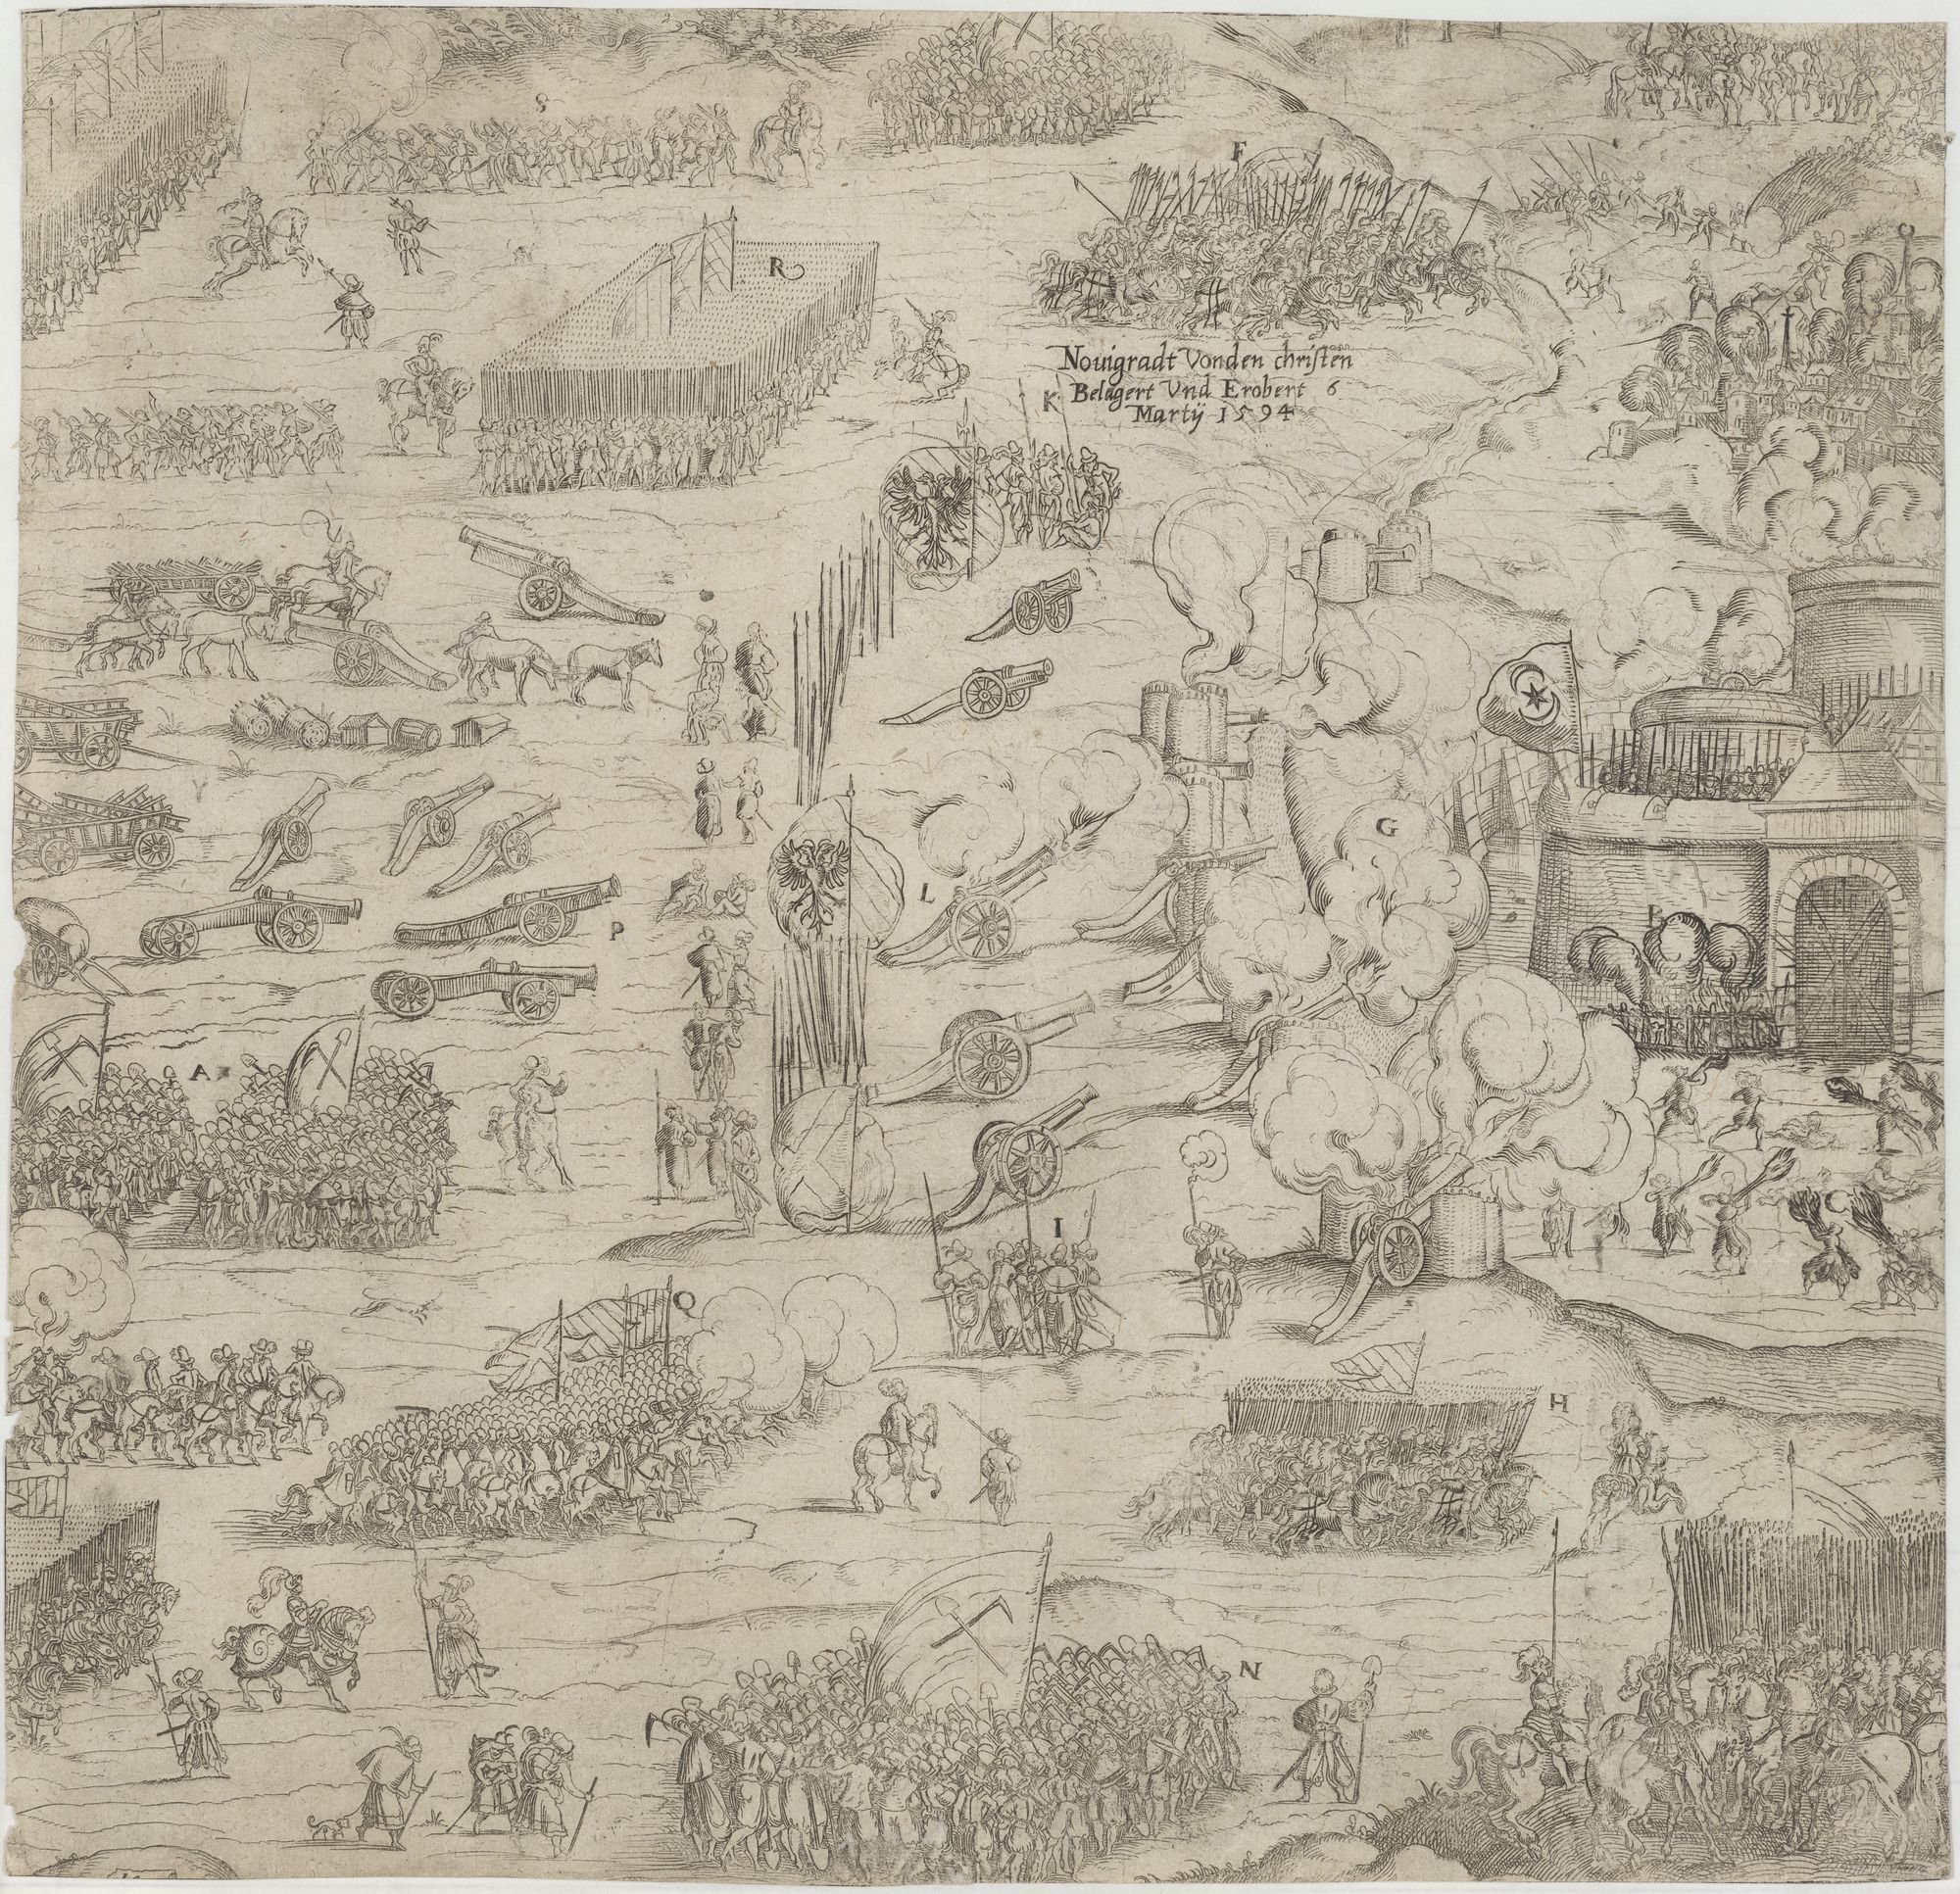 Novigradt Von den christen/ Belagert Und Erobert/ Marty 1594 (Kulturstiftung Sachsen-Anhalt Public Domain Mark)